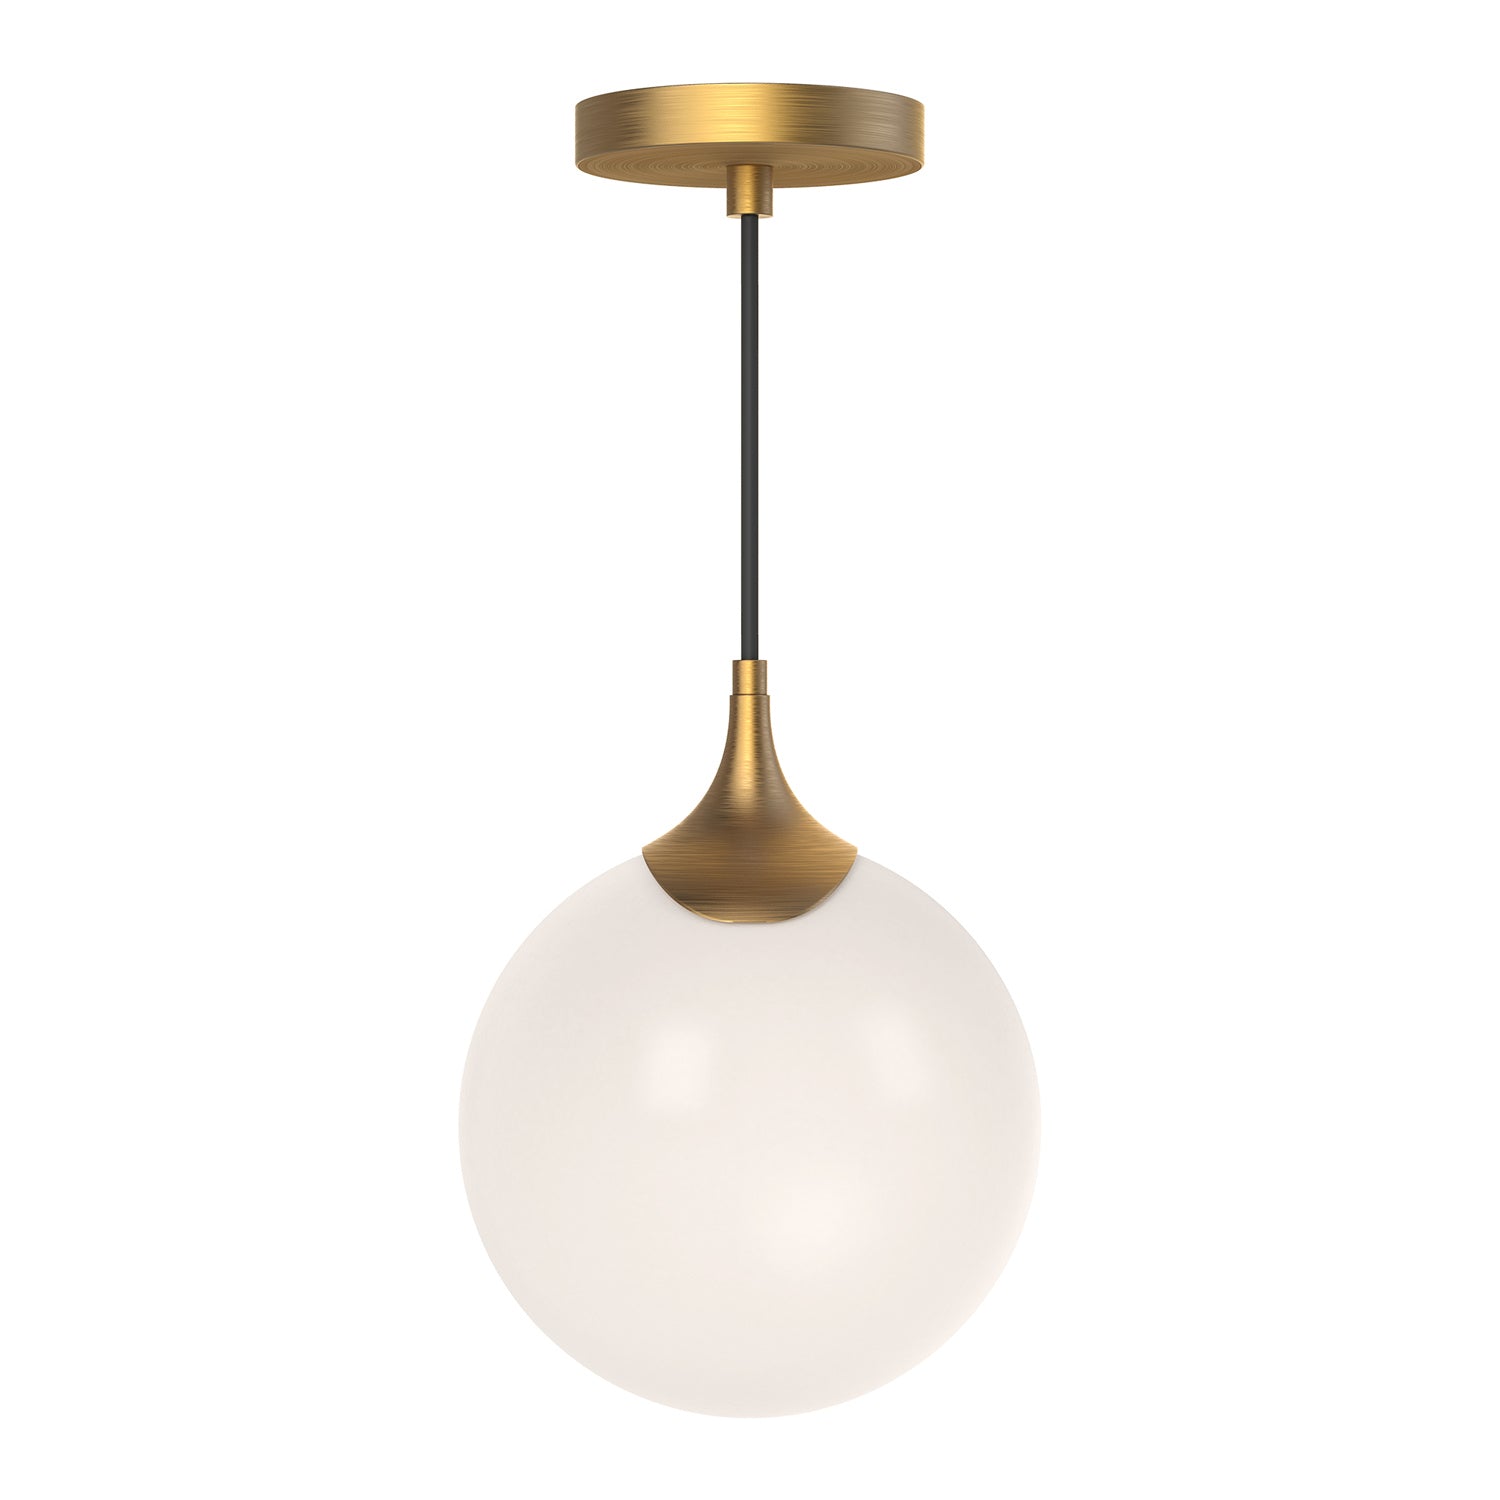 Alora Canada - One Light Pendant - Nouveau - Aged Gold/Opal Matte Glass|Matte Black/Opal Matte Glass- Union Lighting Luminaires Decor